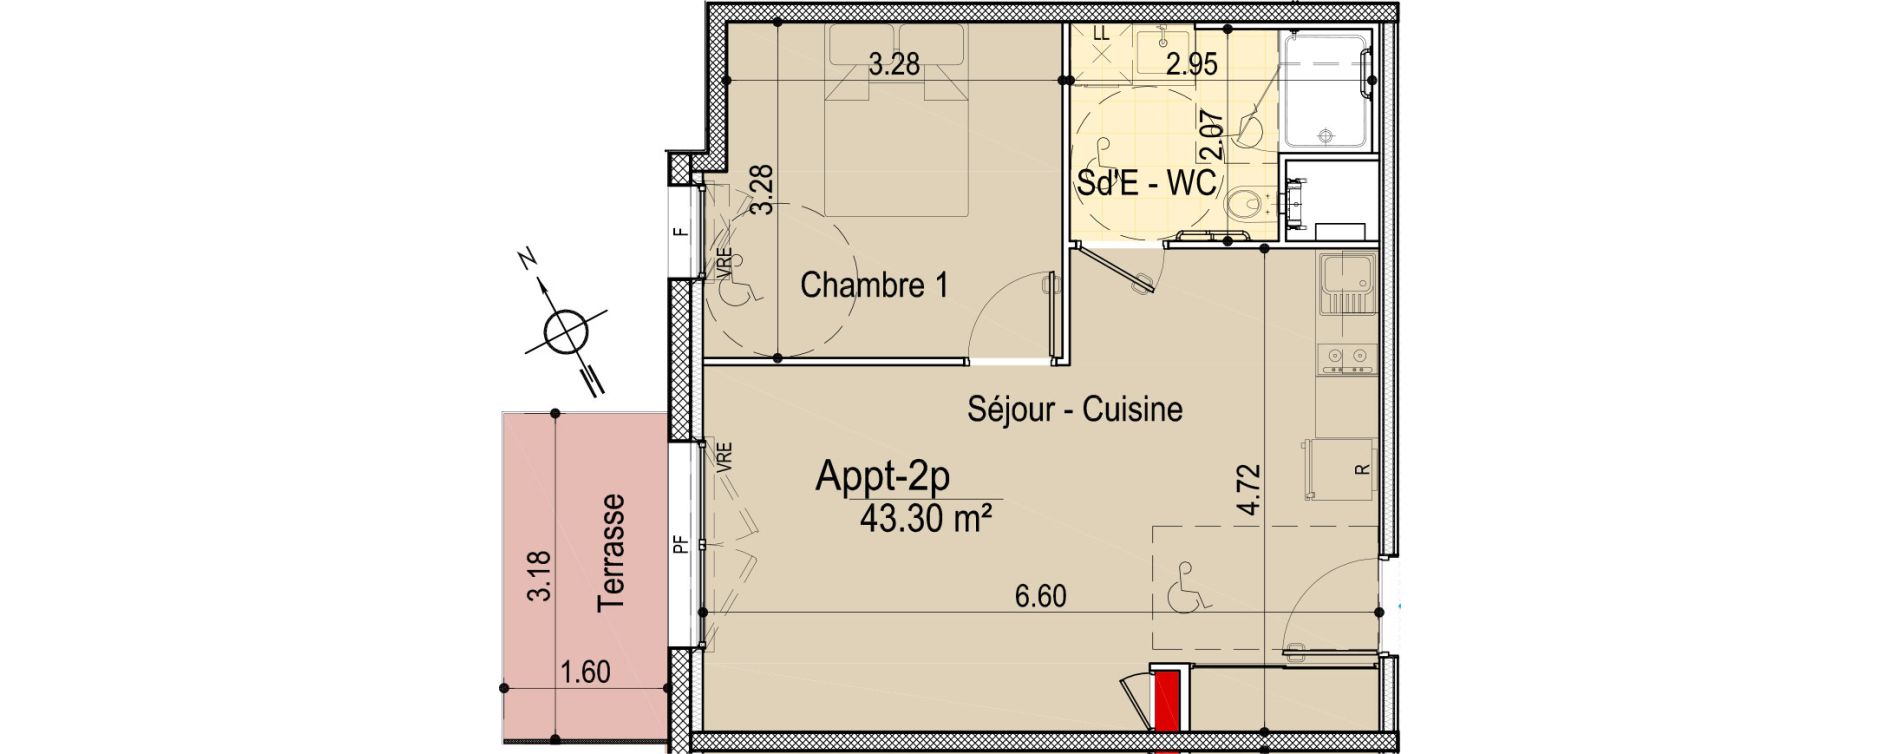 Appartement T2 de 43,30 m2 aux Sables-D'Olonne Le chateau d olonne